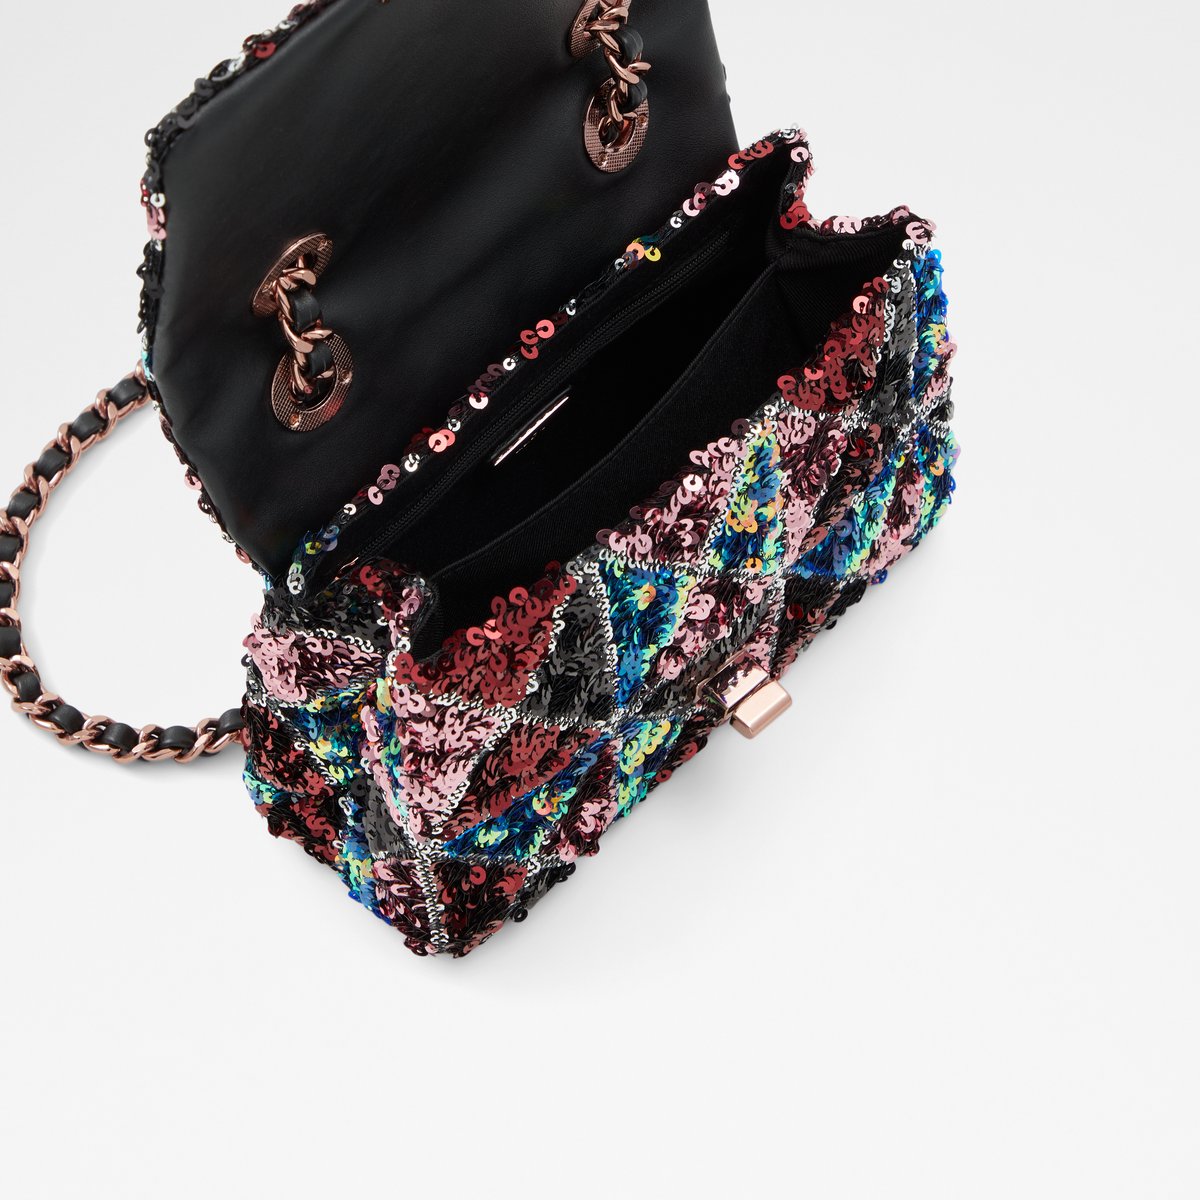 Aldo Multi-Color Synthetic Women Handbag: Buy Aldo Multi-Color